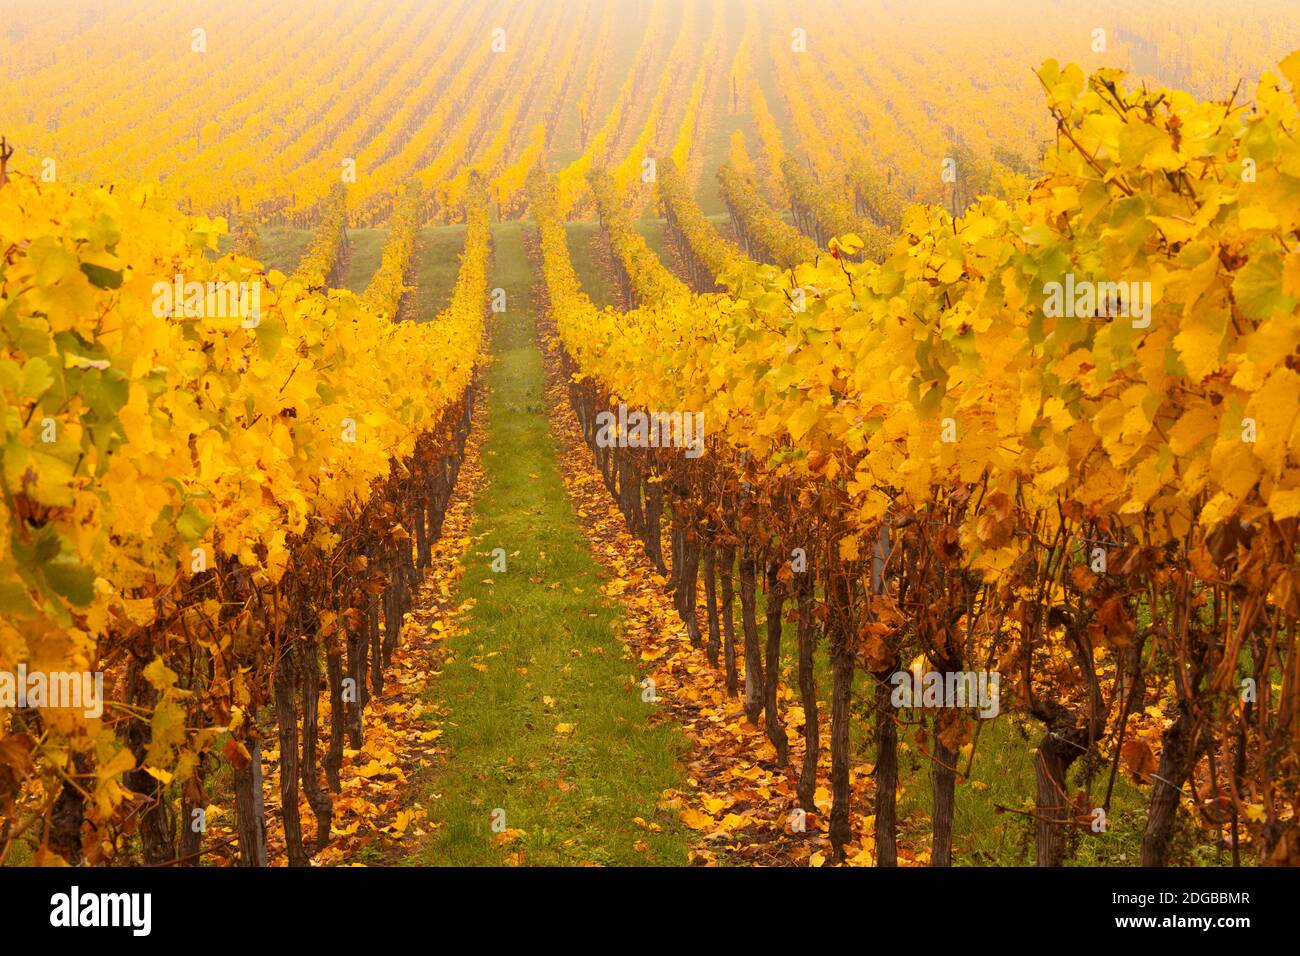 Vigne dans un vignoble, Riquewihr, Alsace, France Banque D'Images